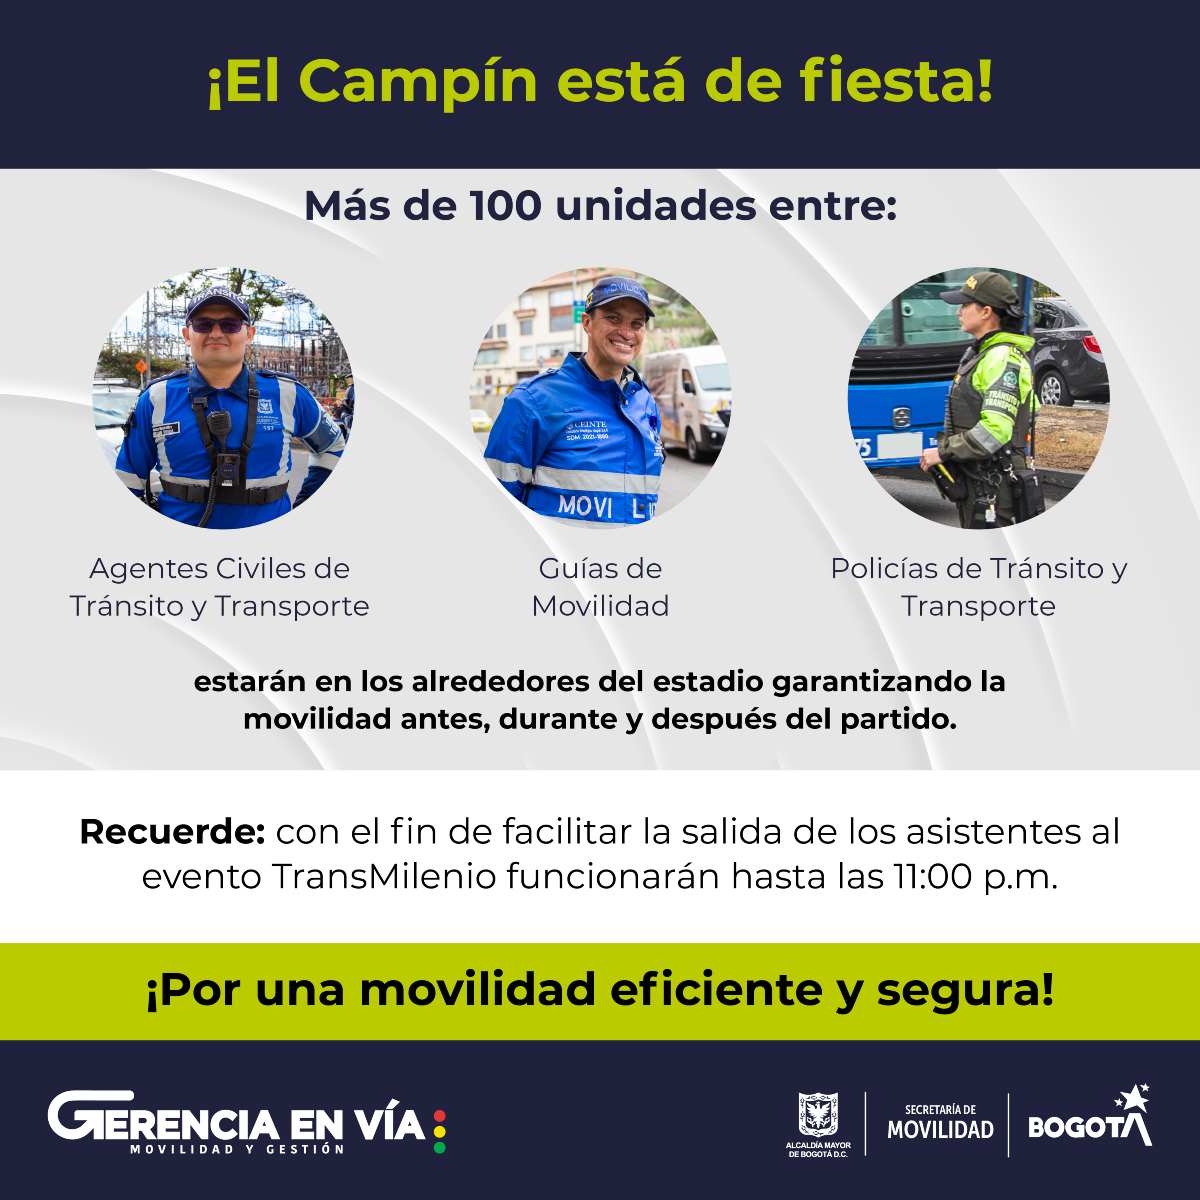 Video Santa Fe vs. Bucaramanga en Bogotá movilidad y cierres por final